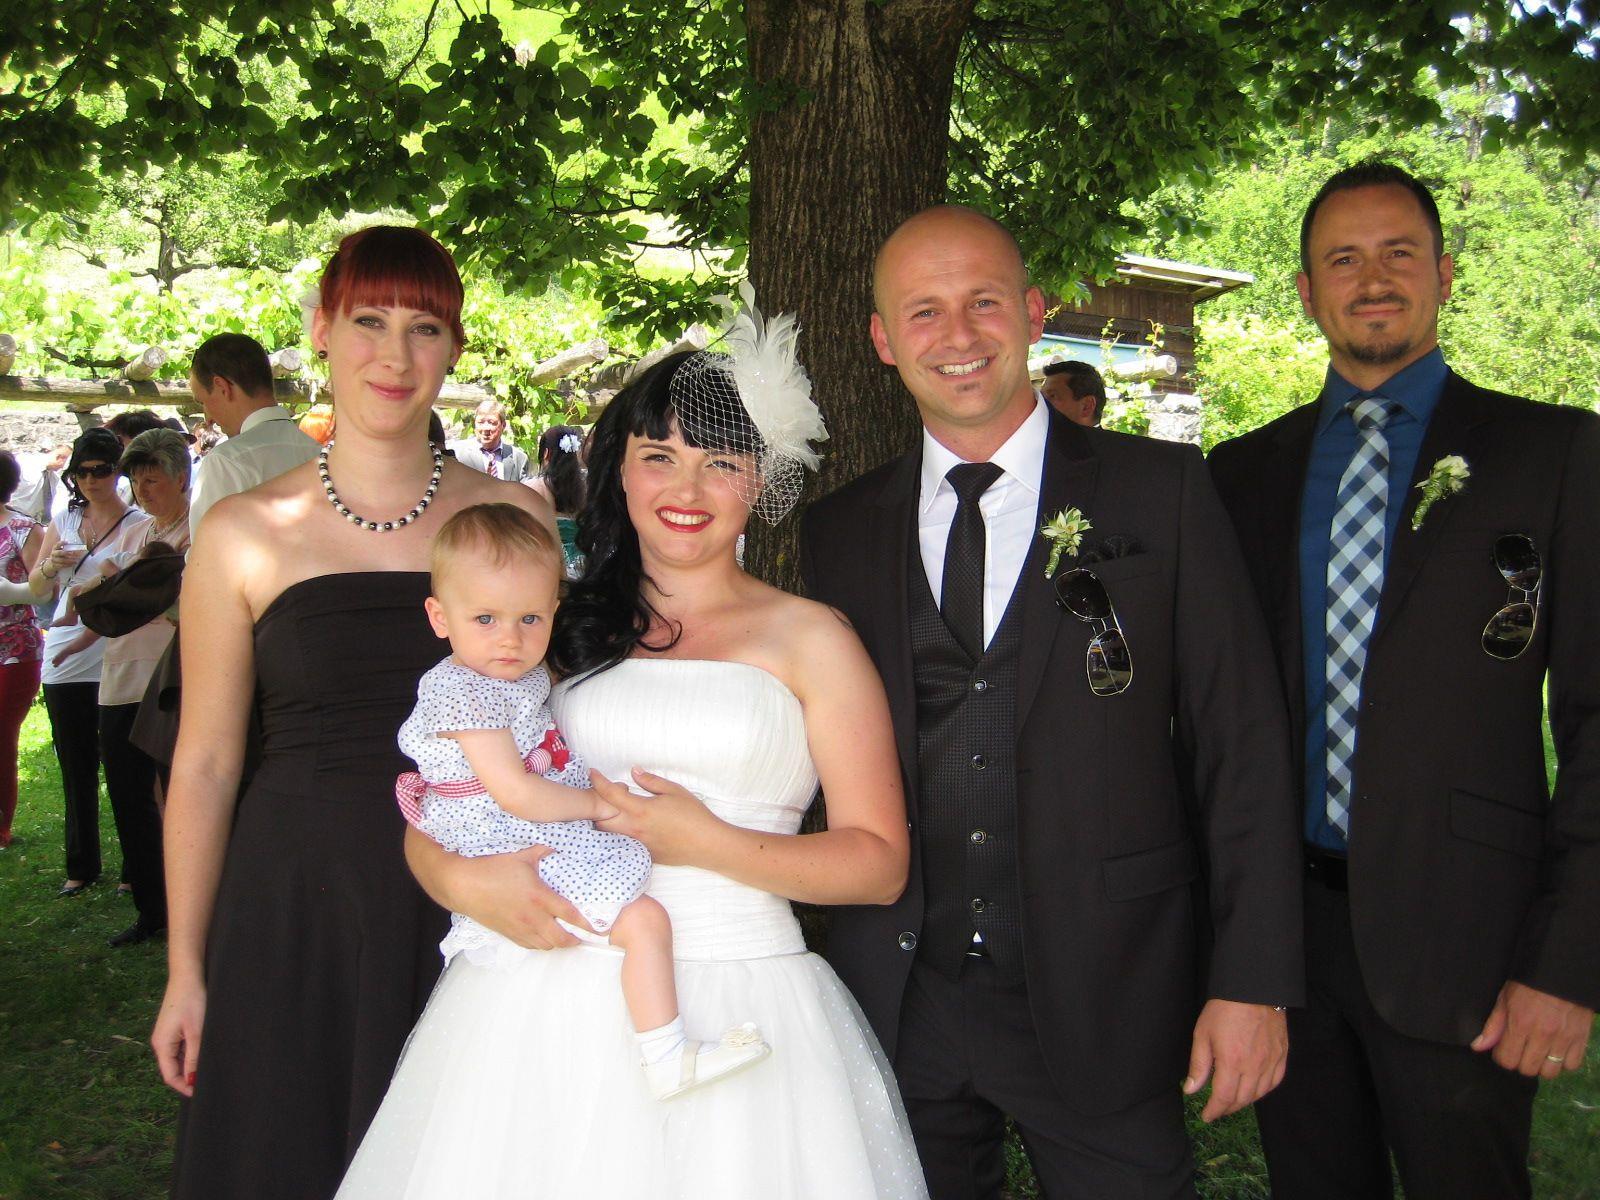 Yvonne Kilga und Christian Coik haben geheiratet.